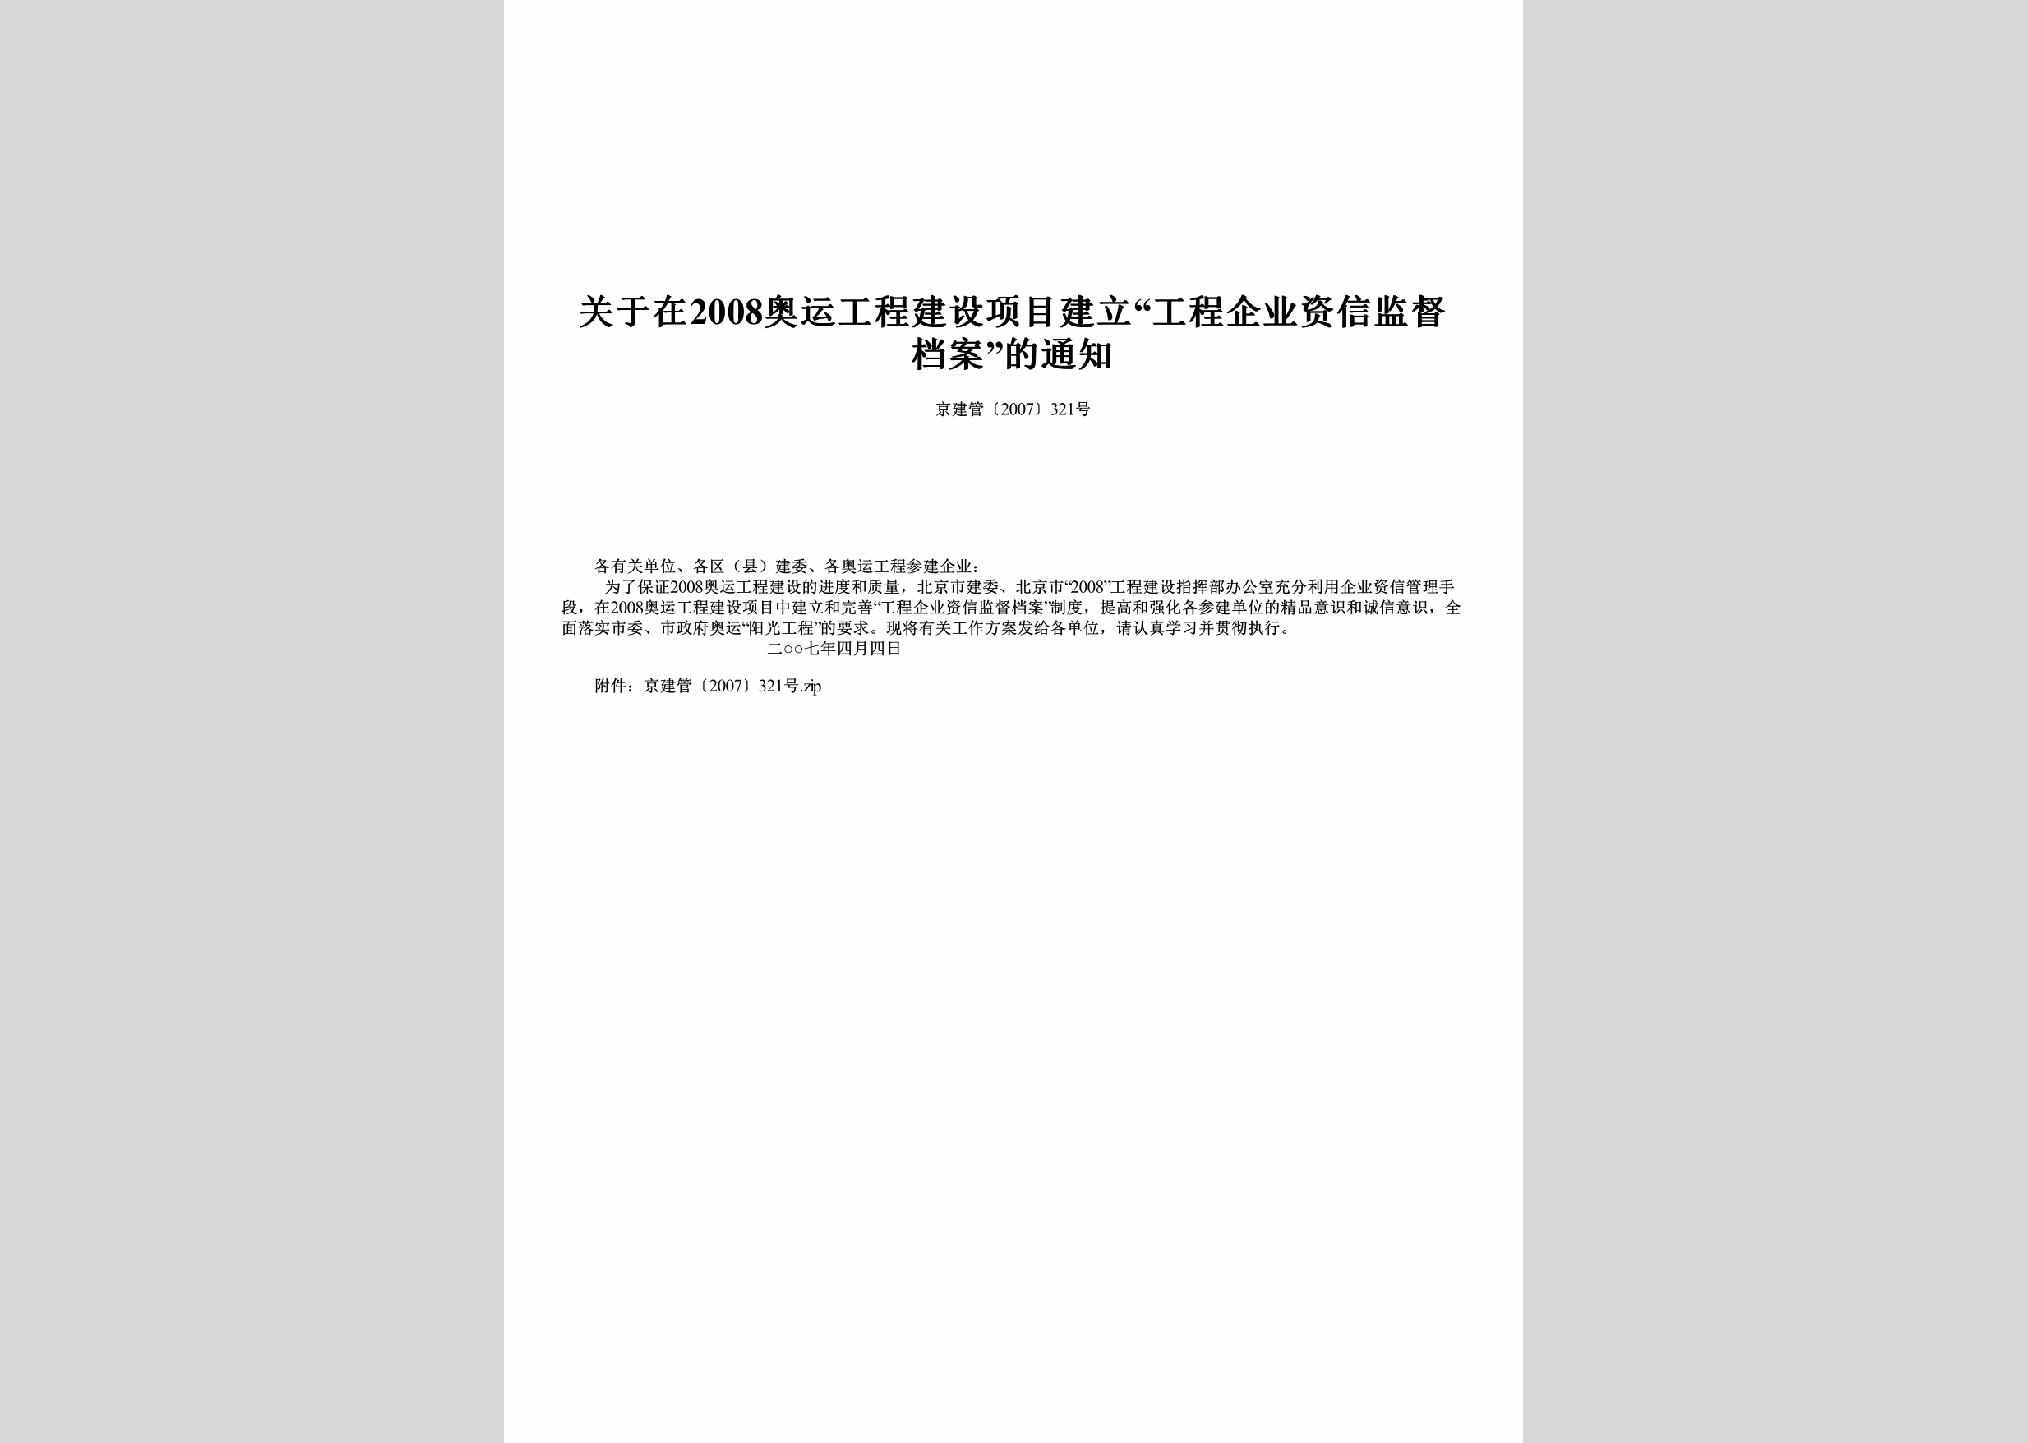 京建管[2007]321号：关于在2008奥运工程建设项目建立“工程企业资信监督档案”的通知